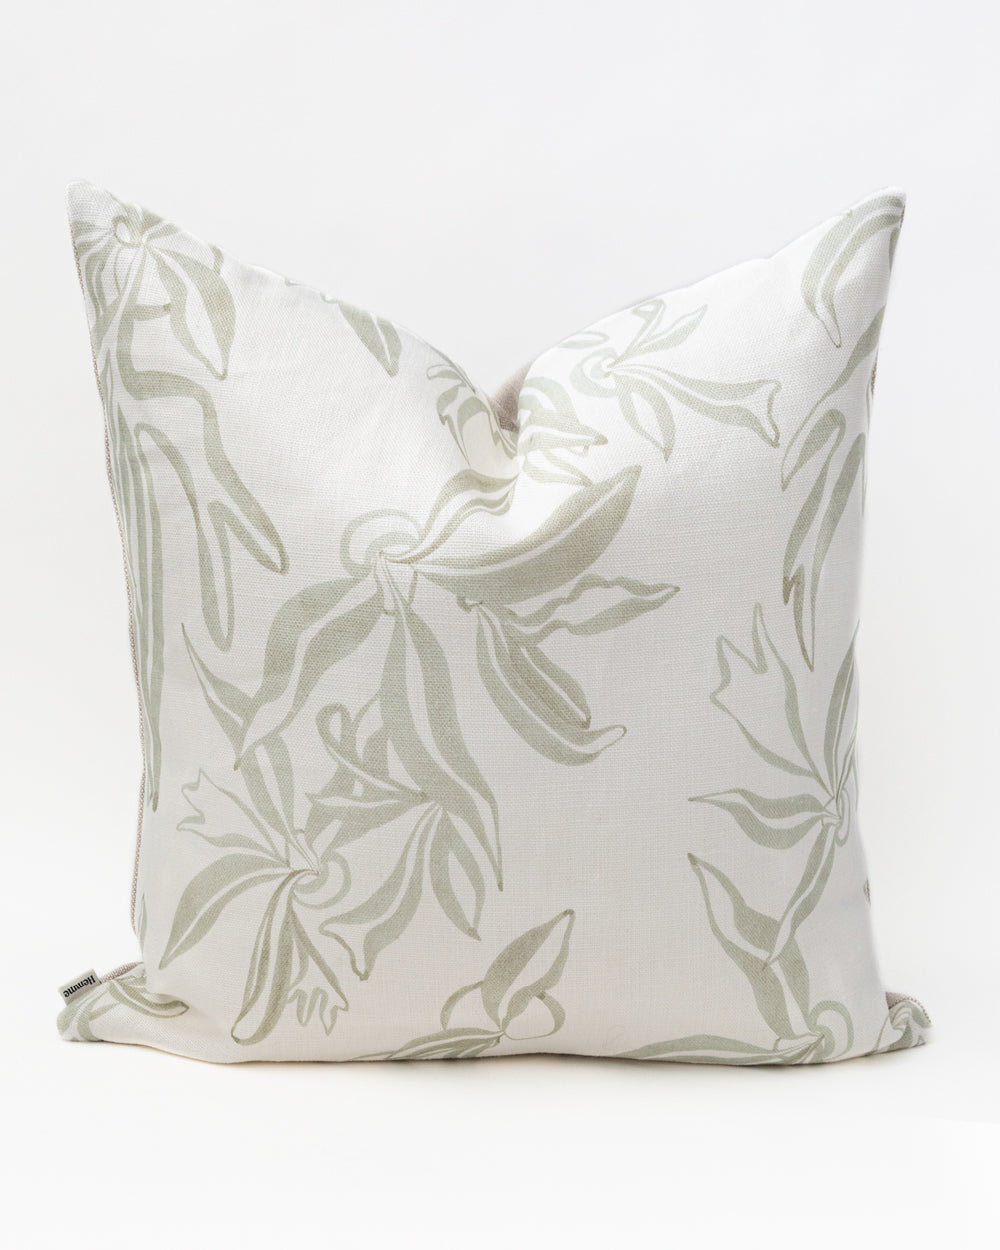 Elkhorn Pillow Cover, Moss